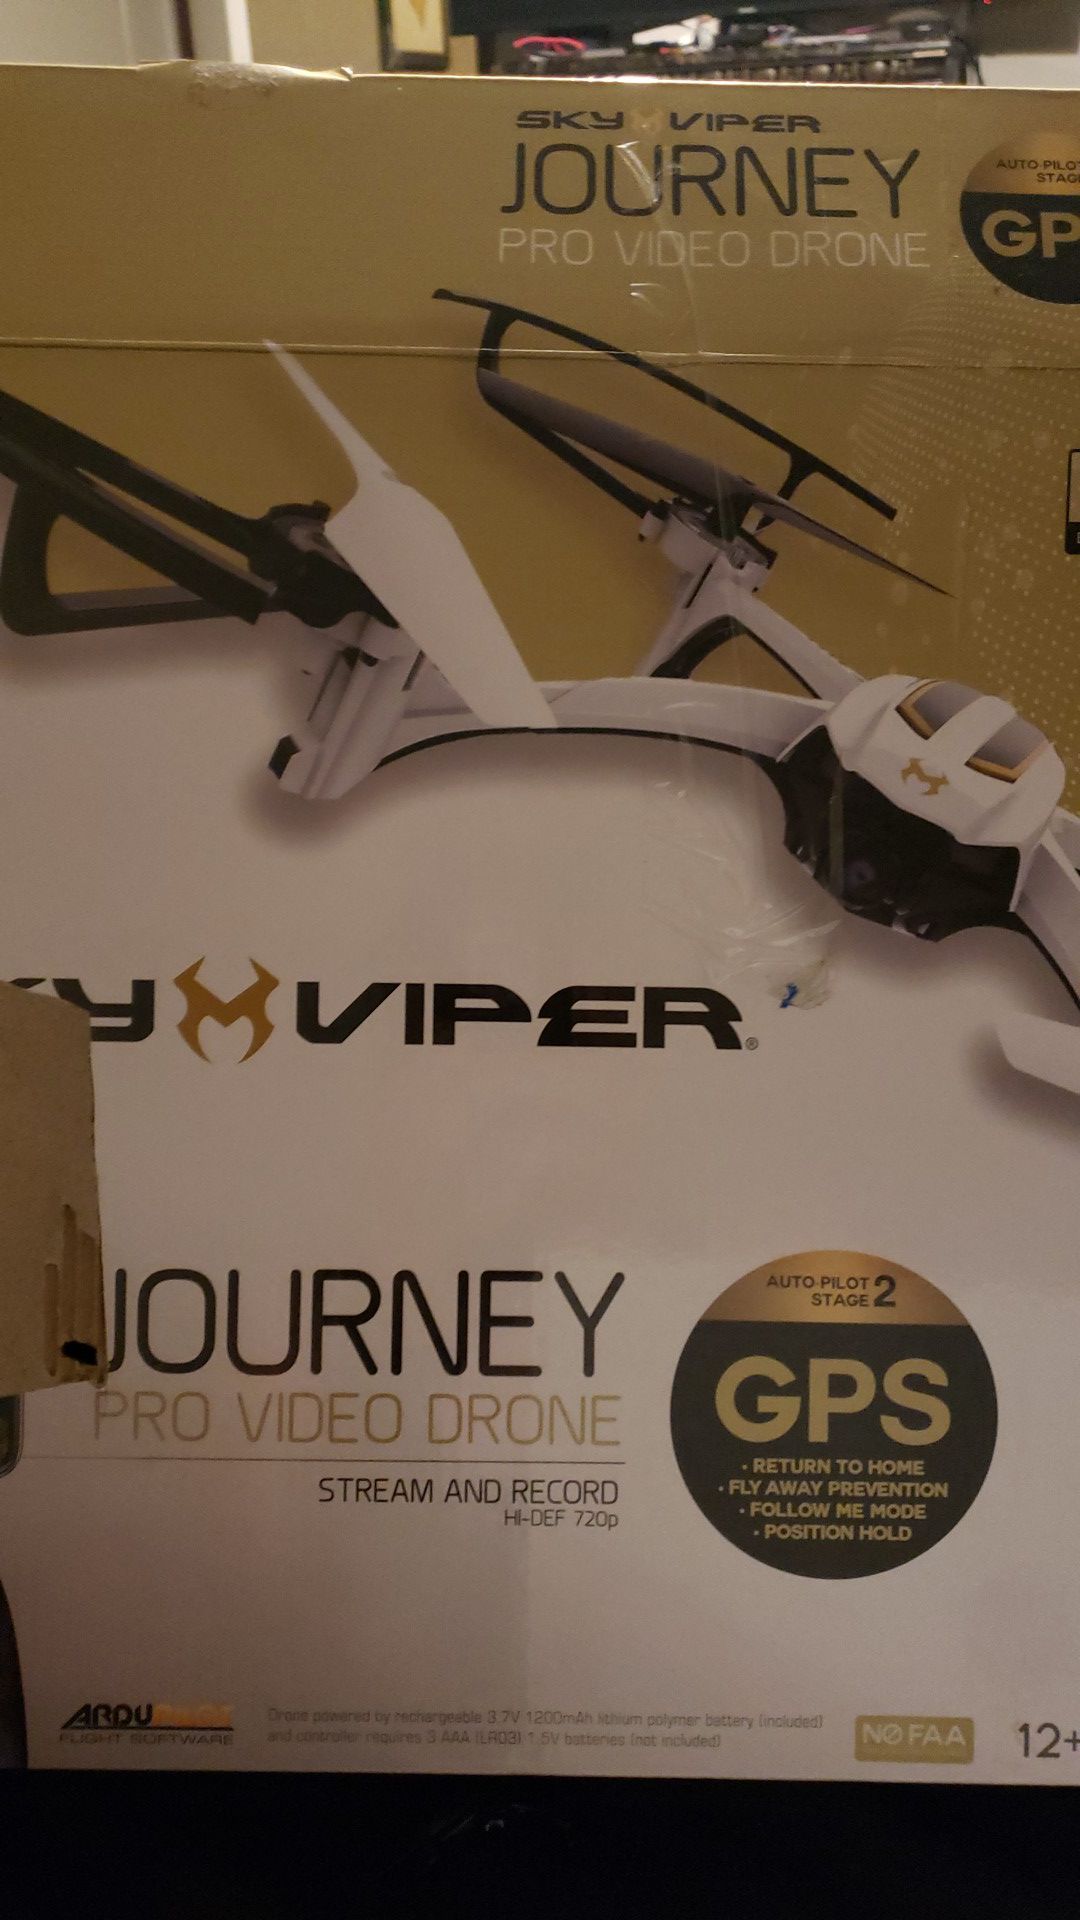 2 sky viper journey GPS drones